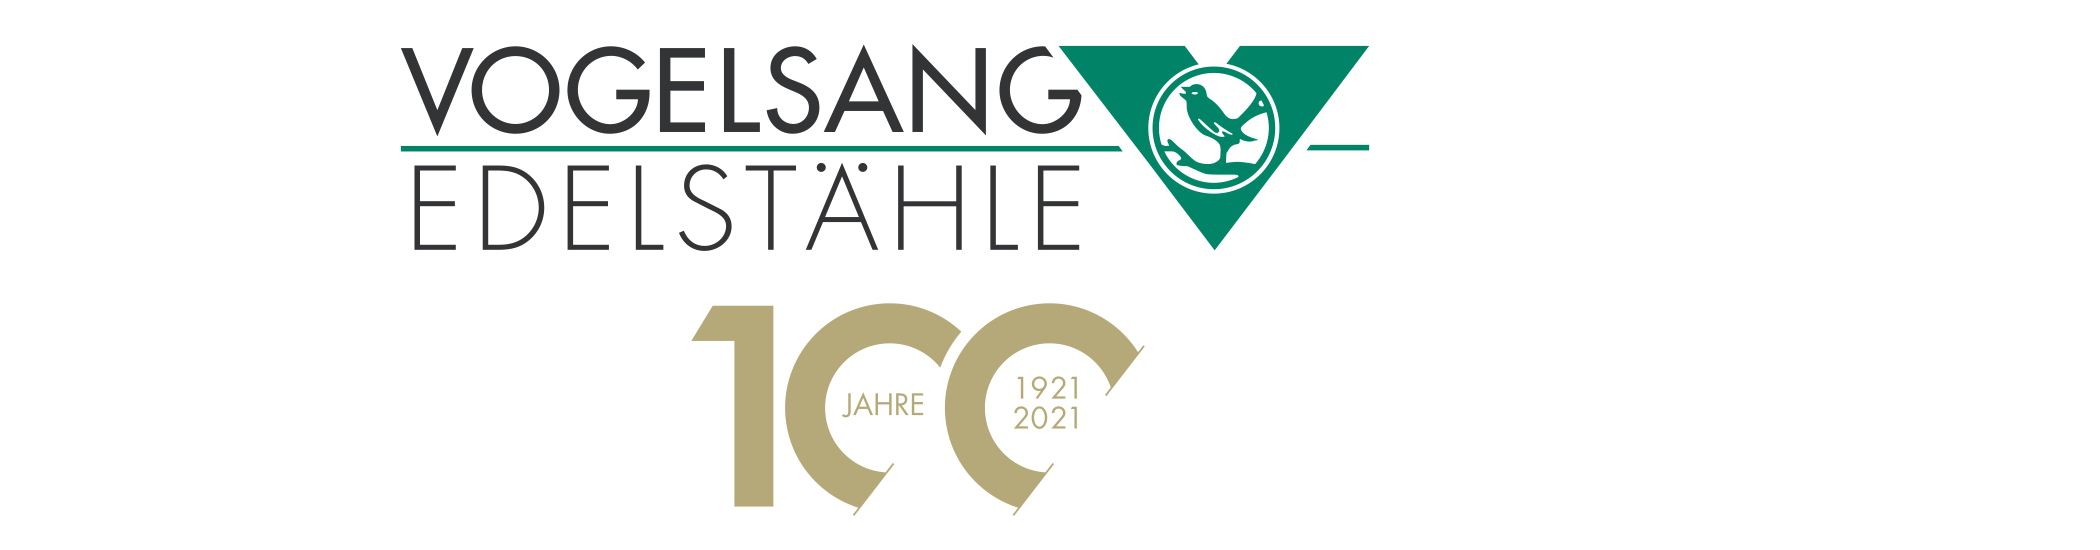 Vogelsang-Edelstähle logo